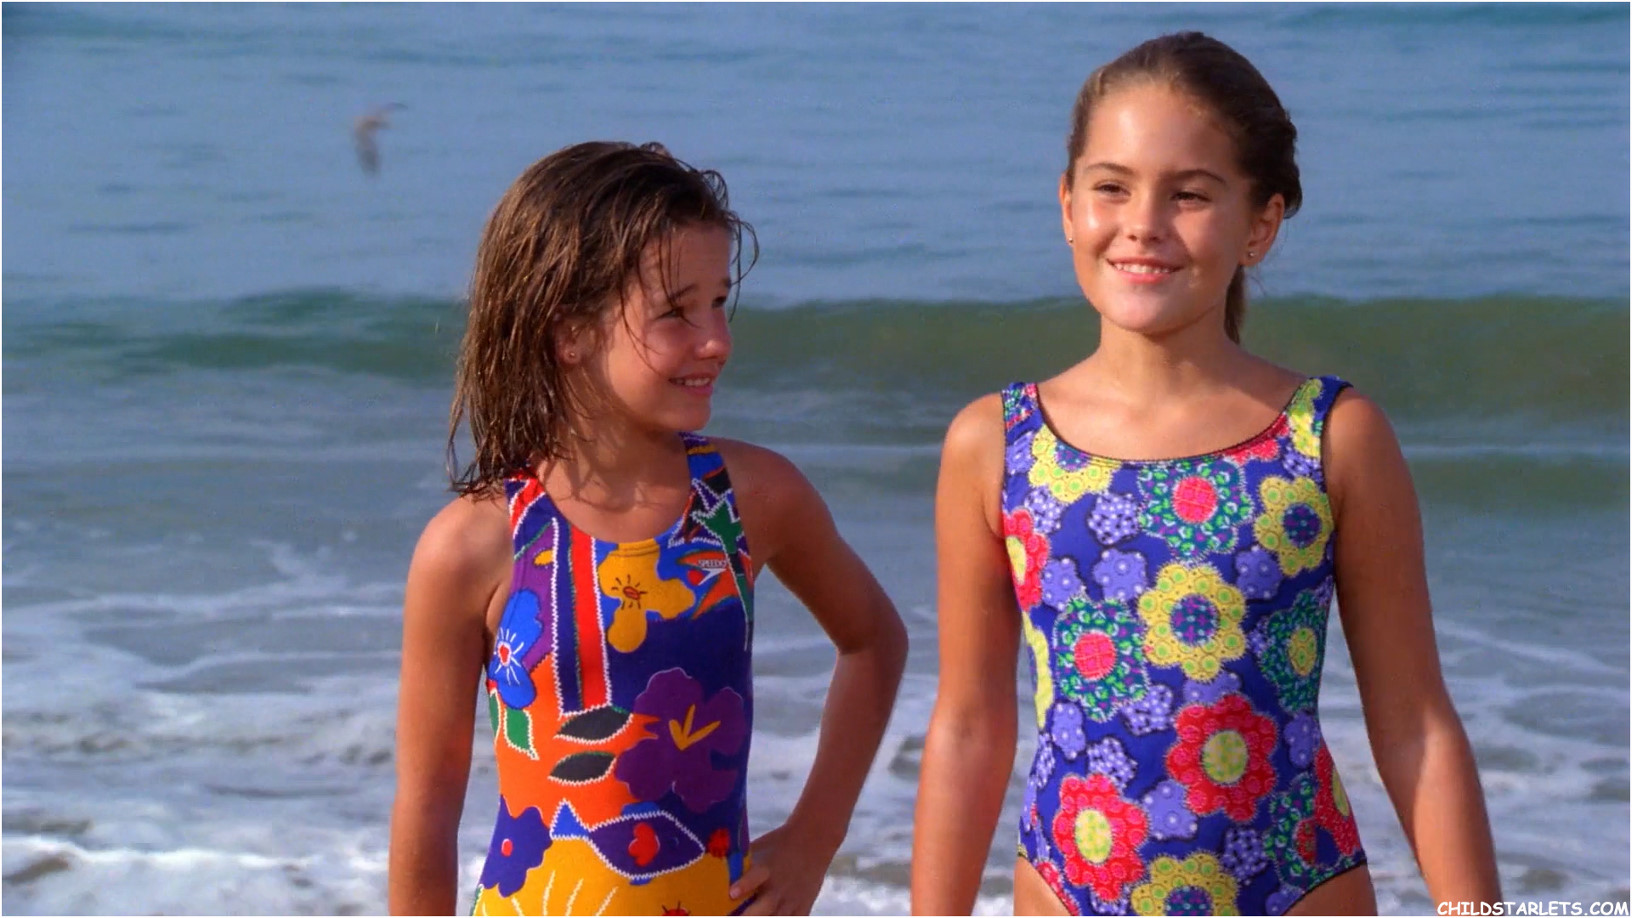 Ashley Gorrell and Lauren Eckstrom in "Baywatch: Sail Away"